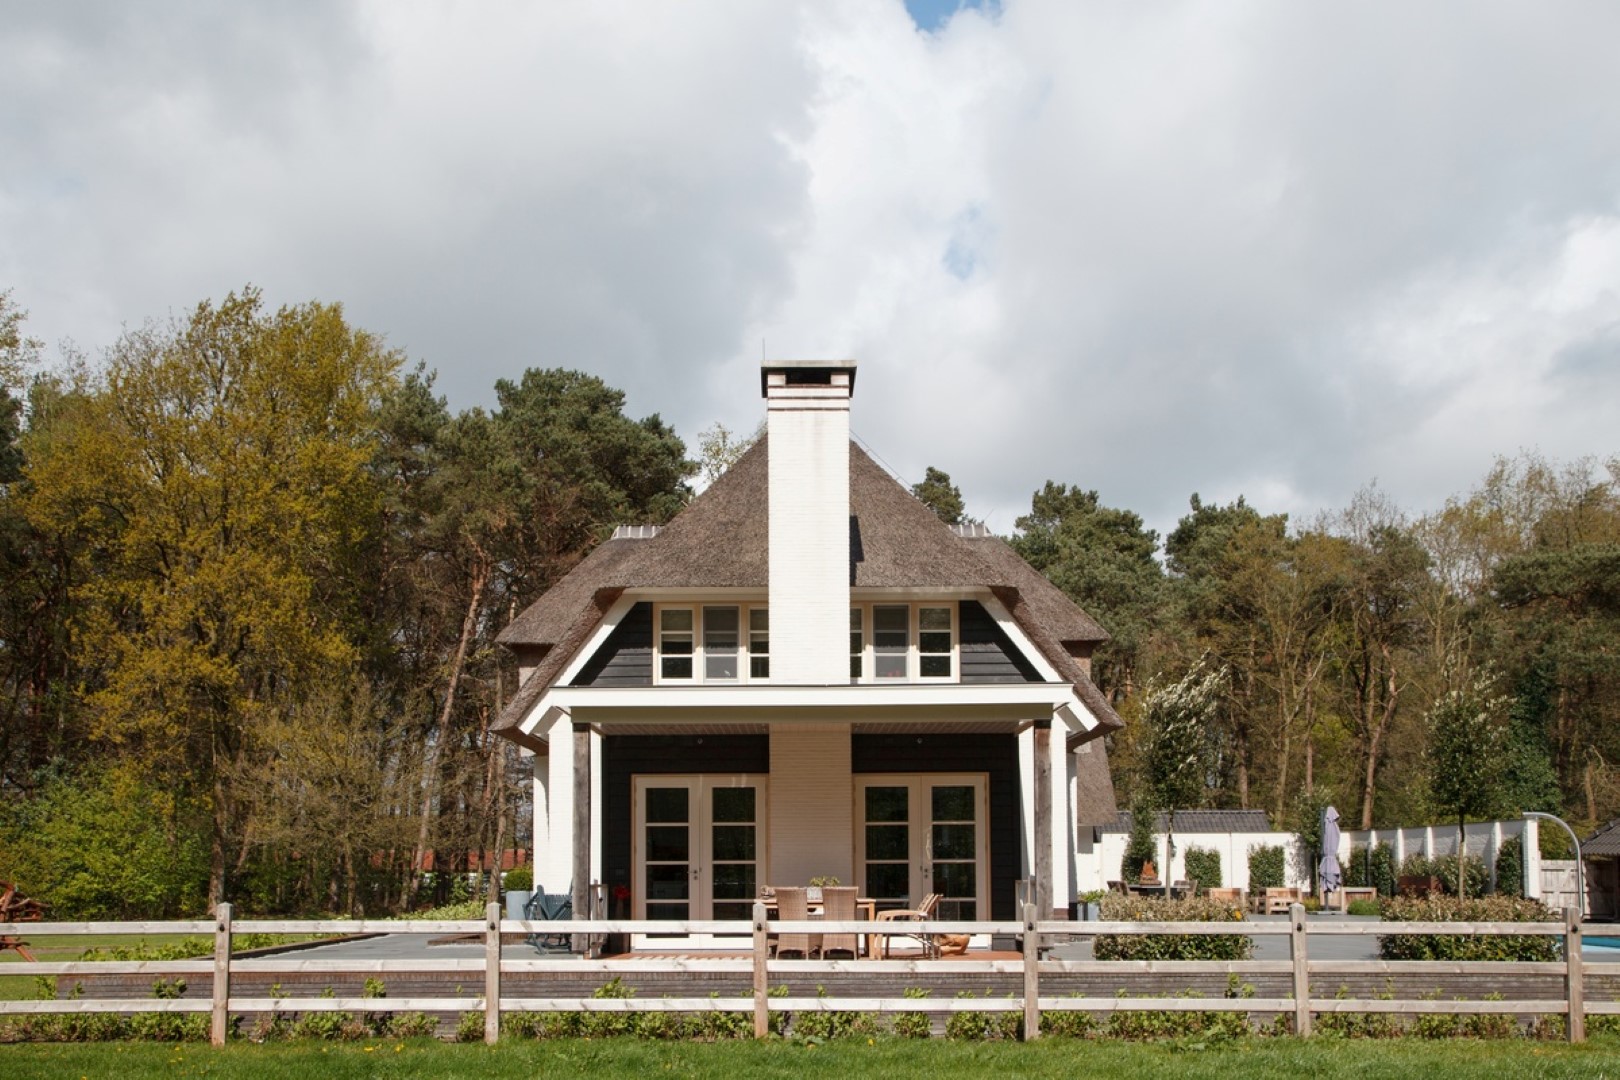 Foto: Villa bouwen voorbeeld Epe zijaanzicht   Lichtenberg Exclusieve Villabouw